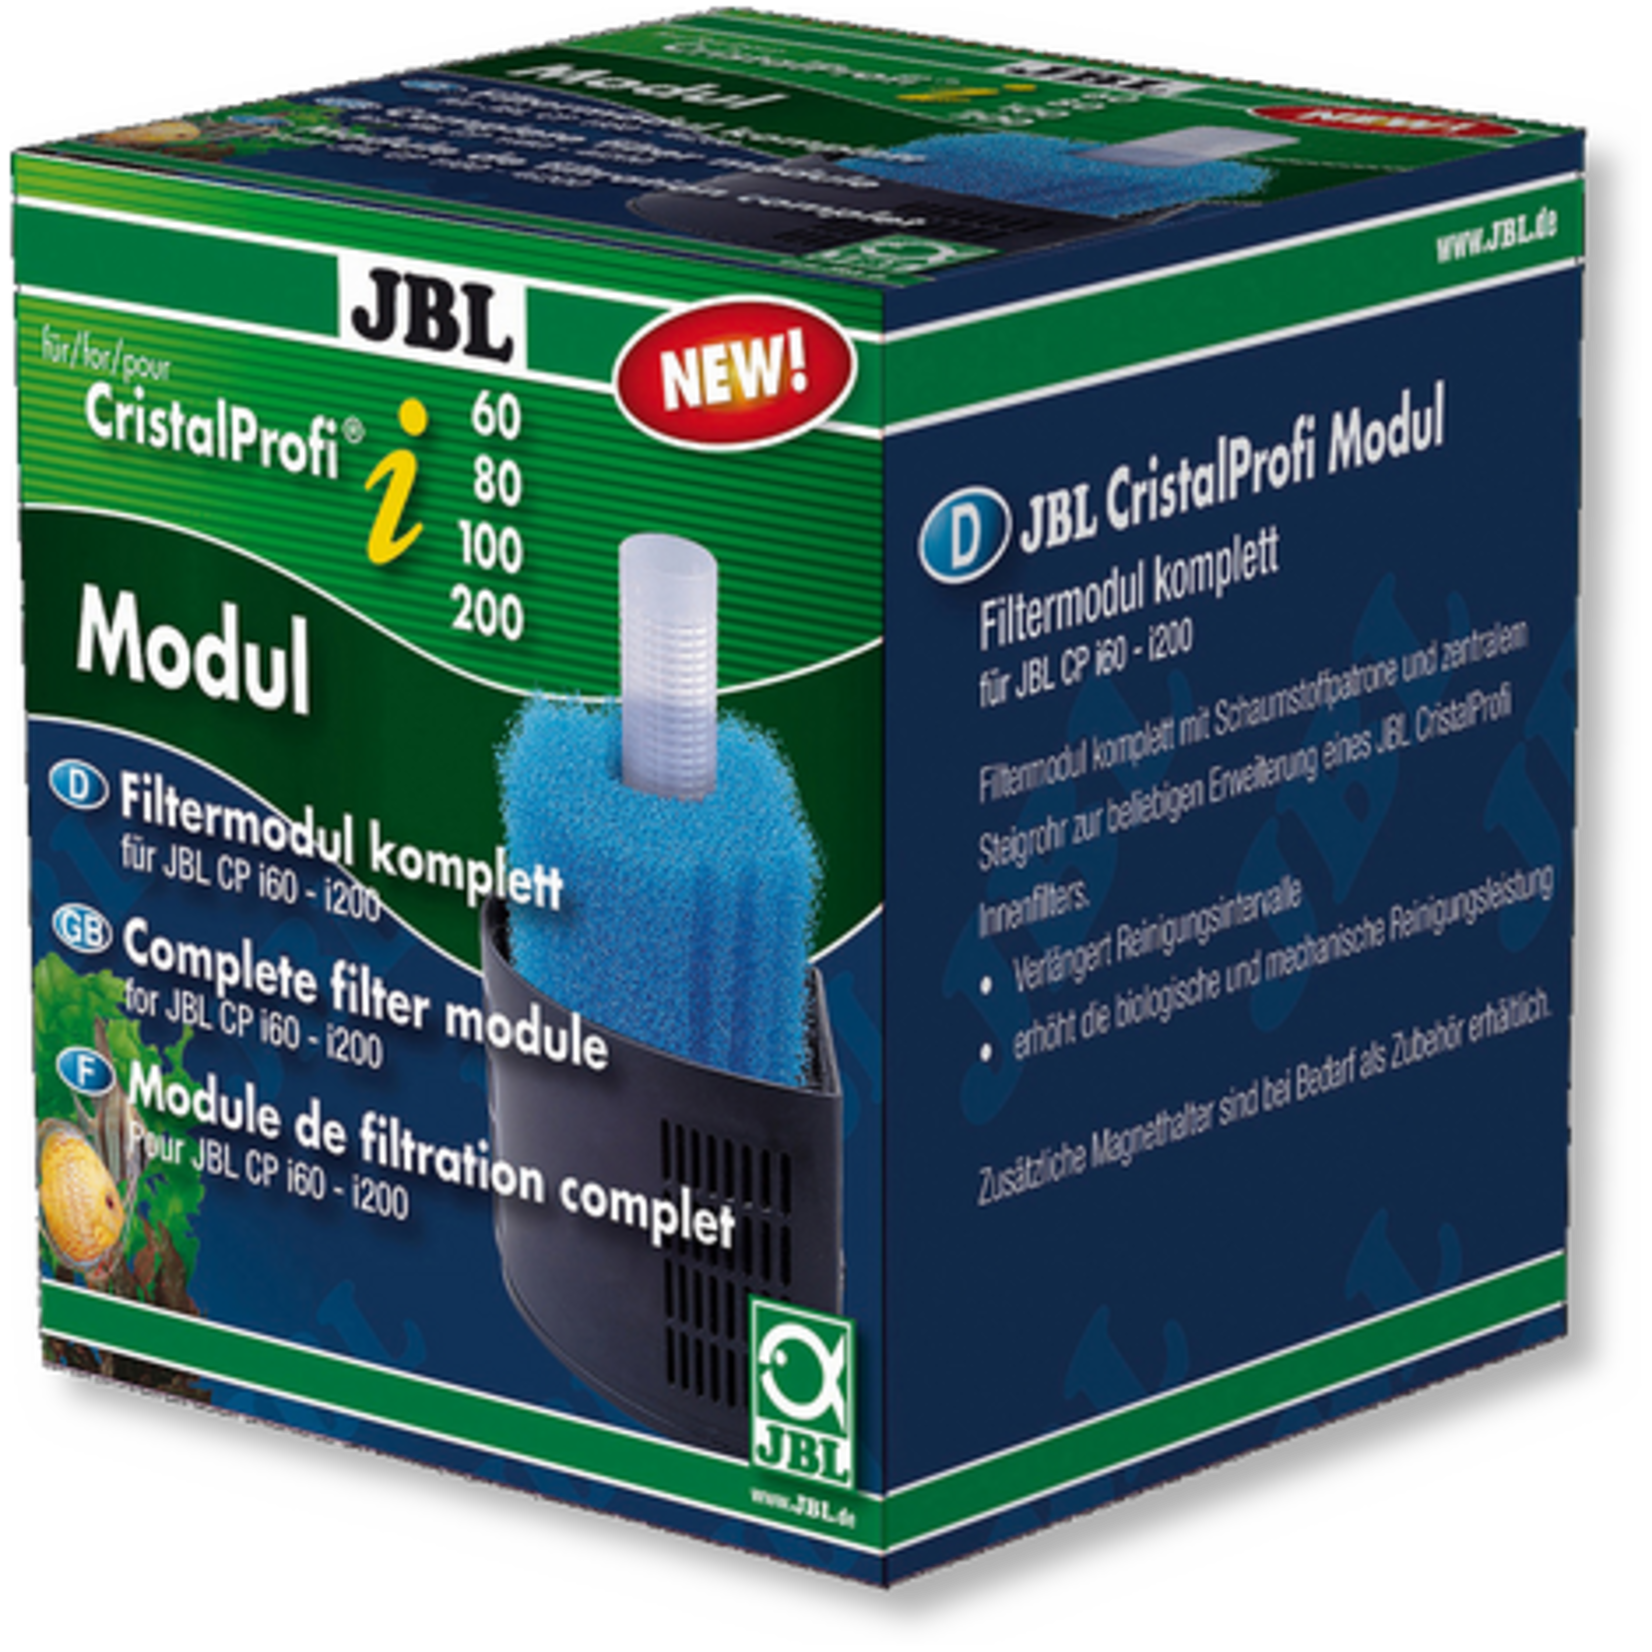 JBL JBL CristalProfi i Filtermodule